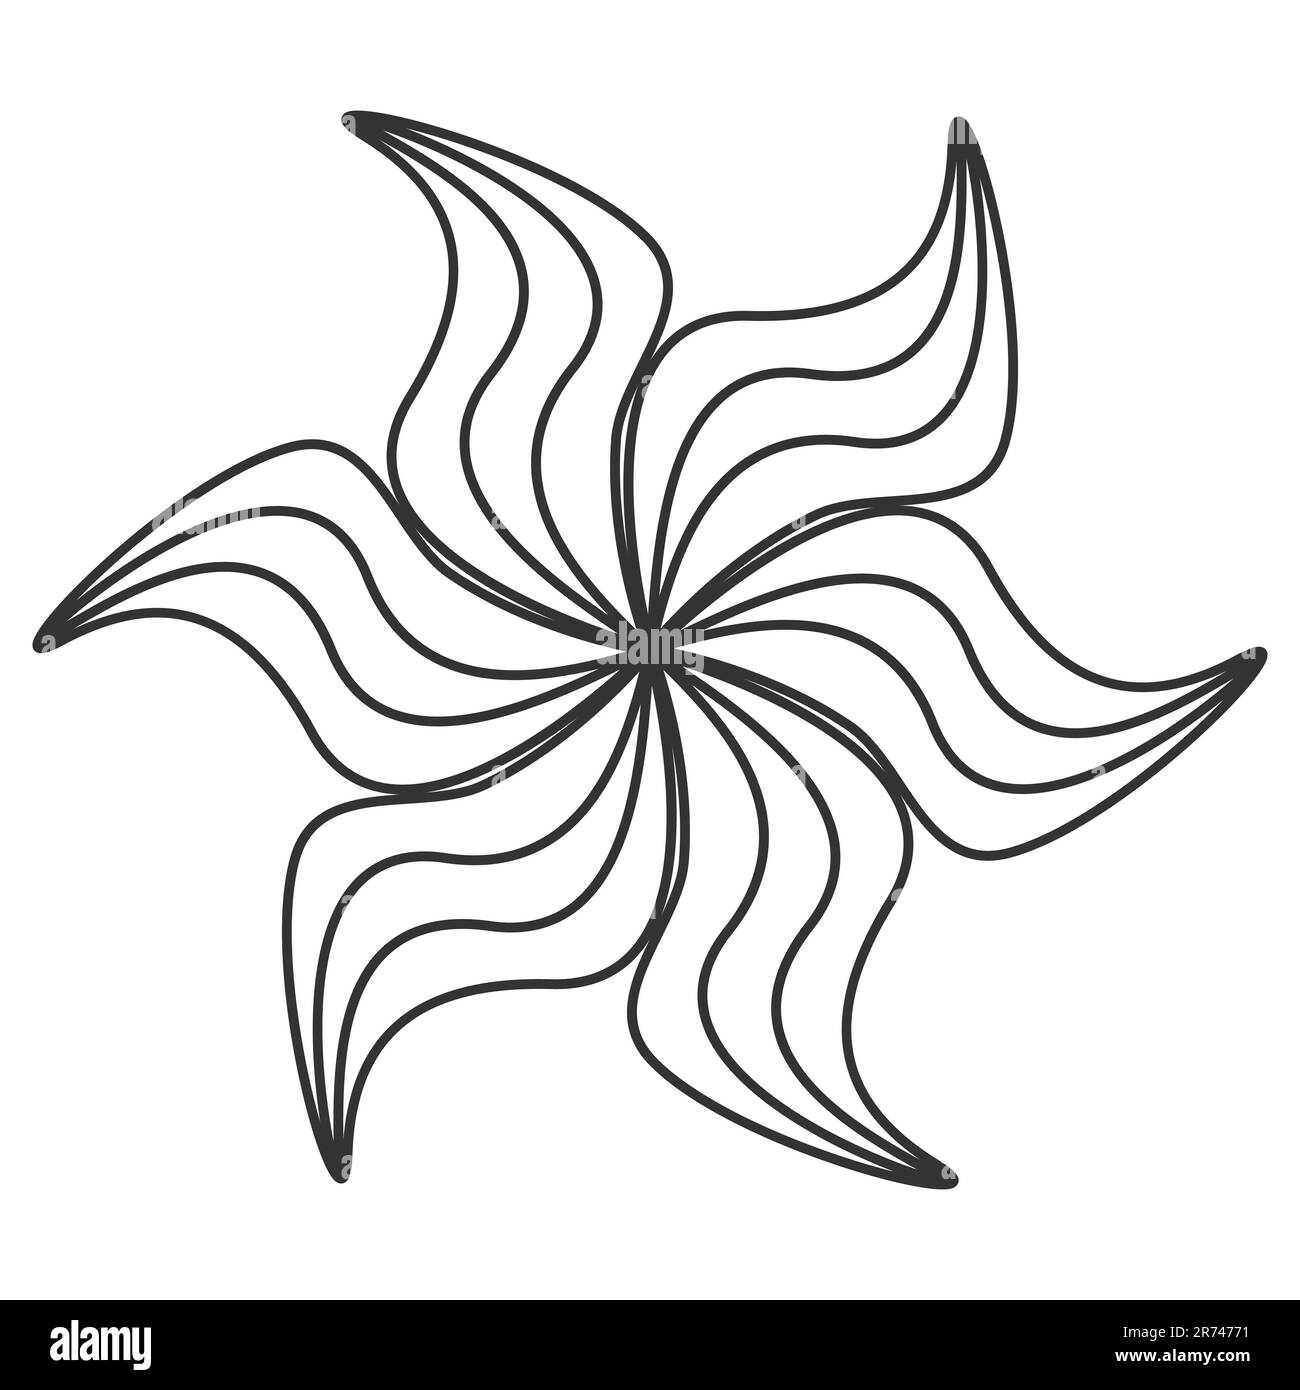 Contour de la fleur de caniche comme le soleil et le feu motif abstrait décoratif élément de ligne simple Contour noir illustration vectorielle isolée sur fond blanc Illustration de Vecteur